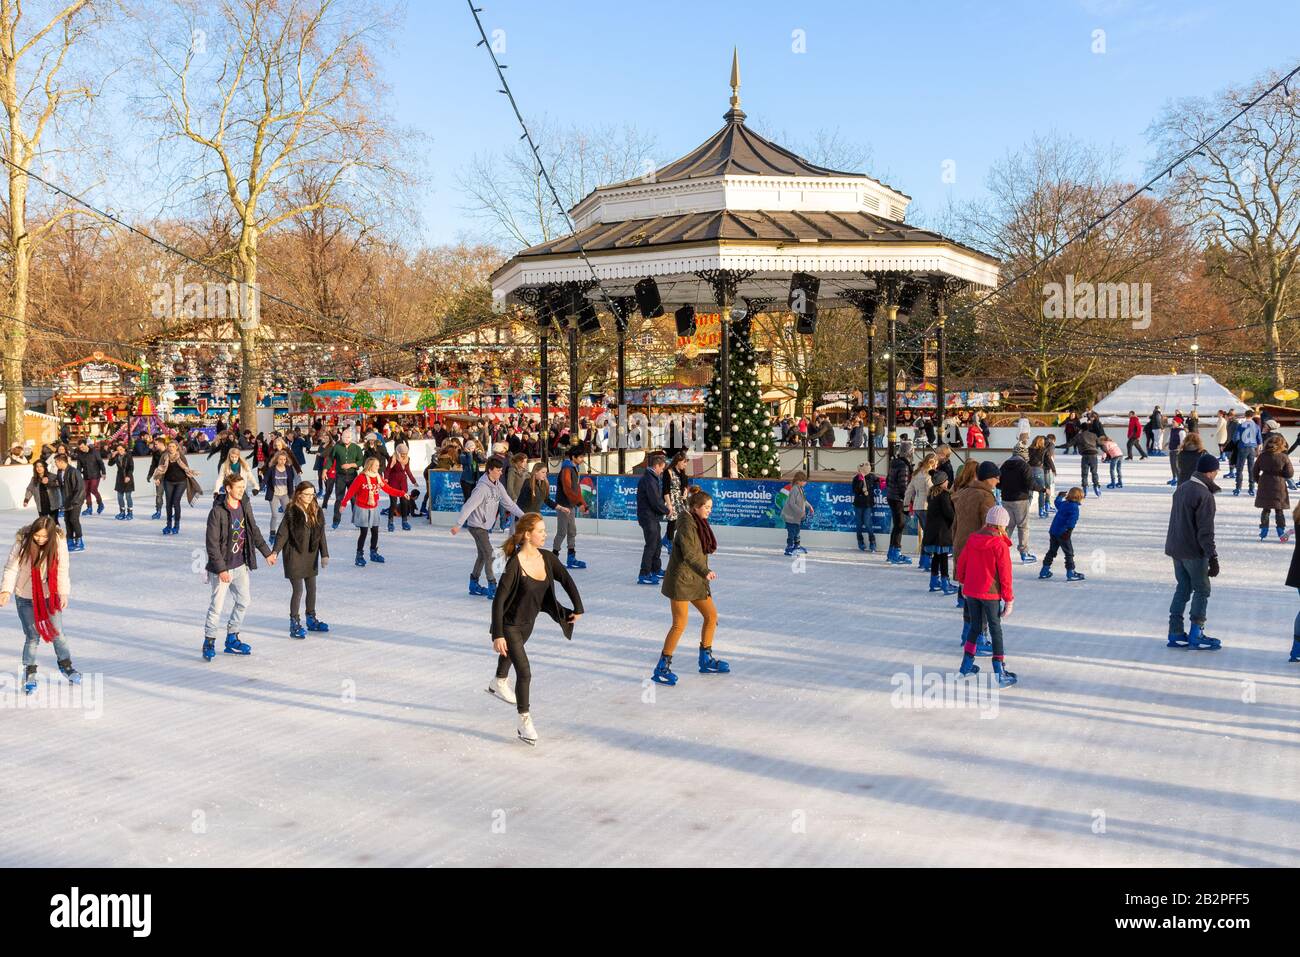 Open air ice skating rink at Christmas at Winter Wonderland, Hyde Park, London, UK Stock Photo